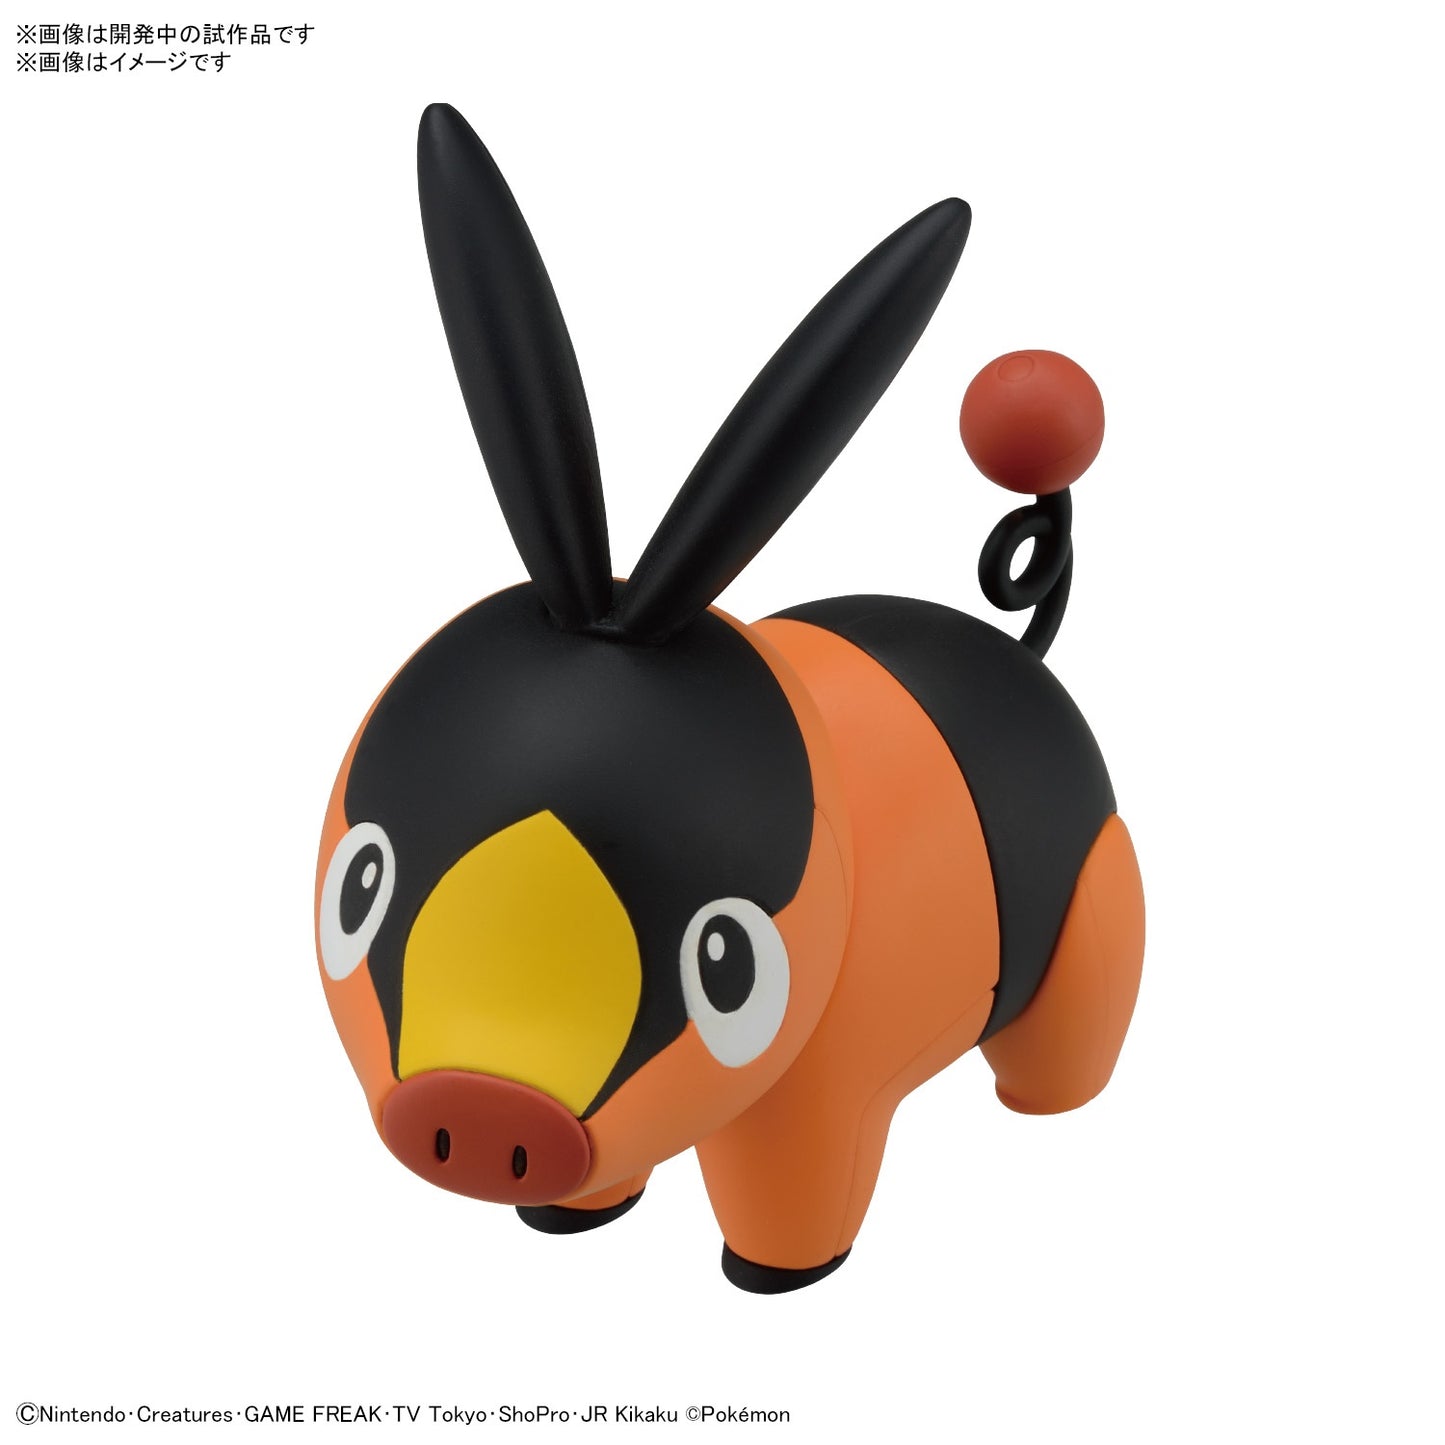 Bandai - Pokémon Model Kit Quick!! #01 Pikachu